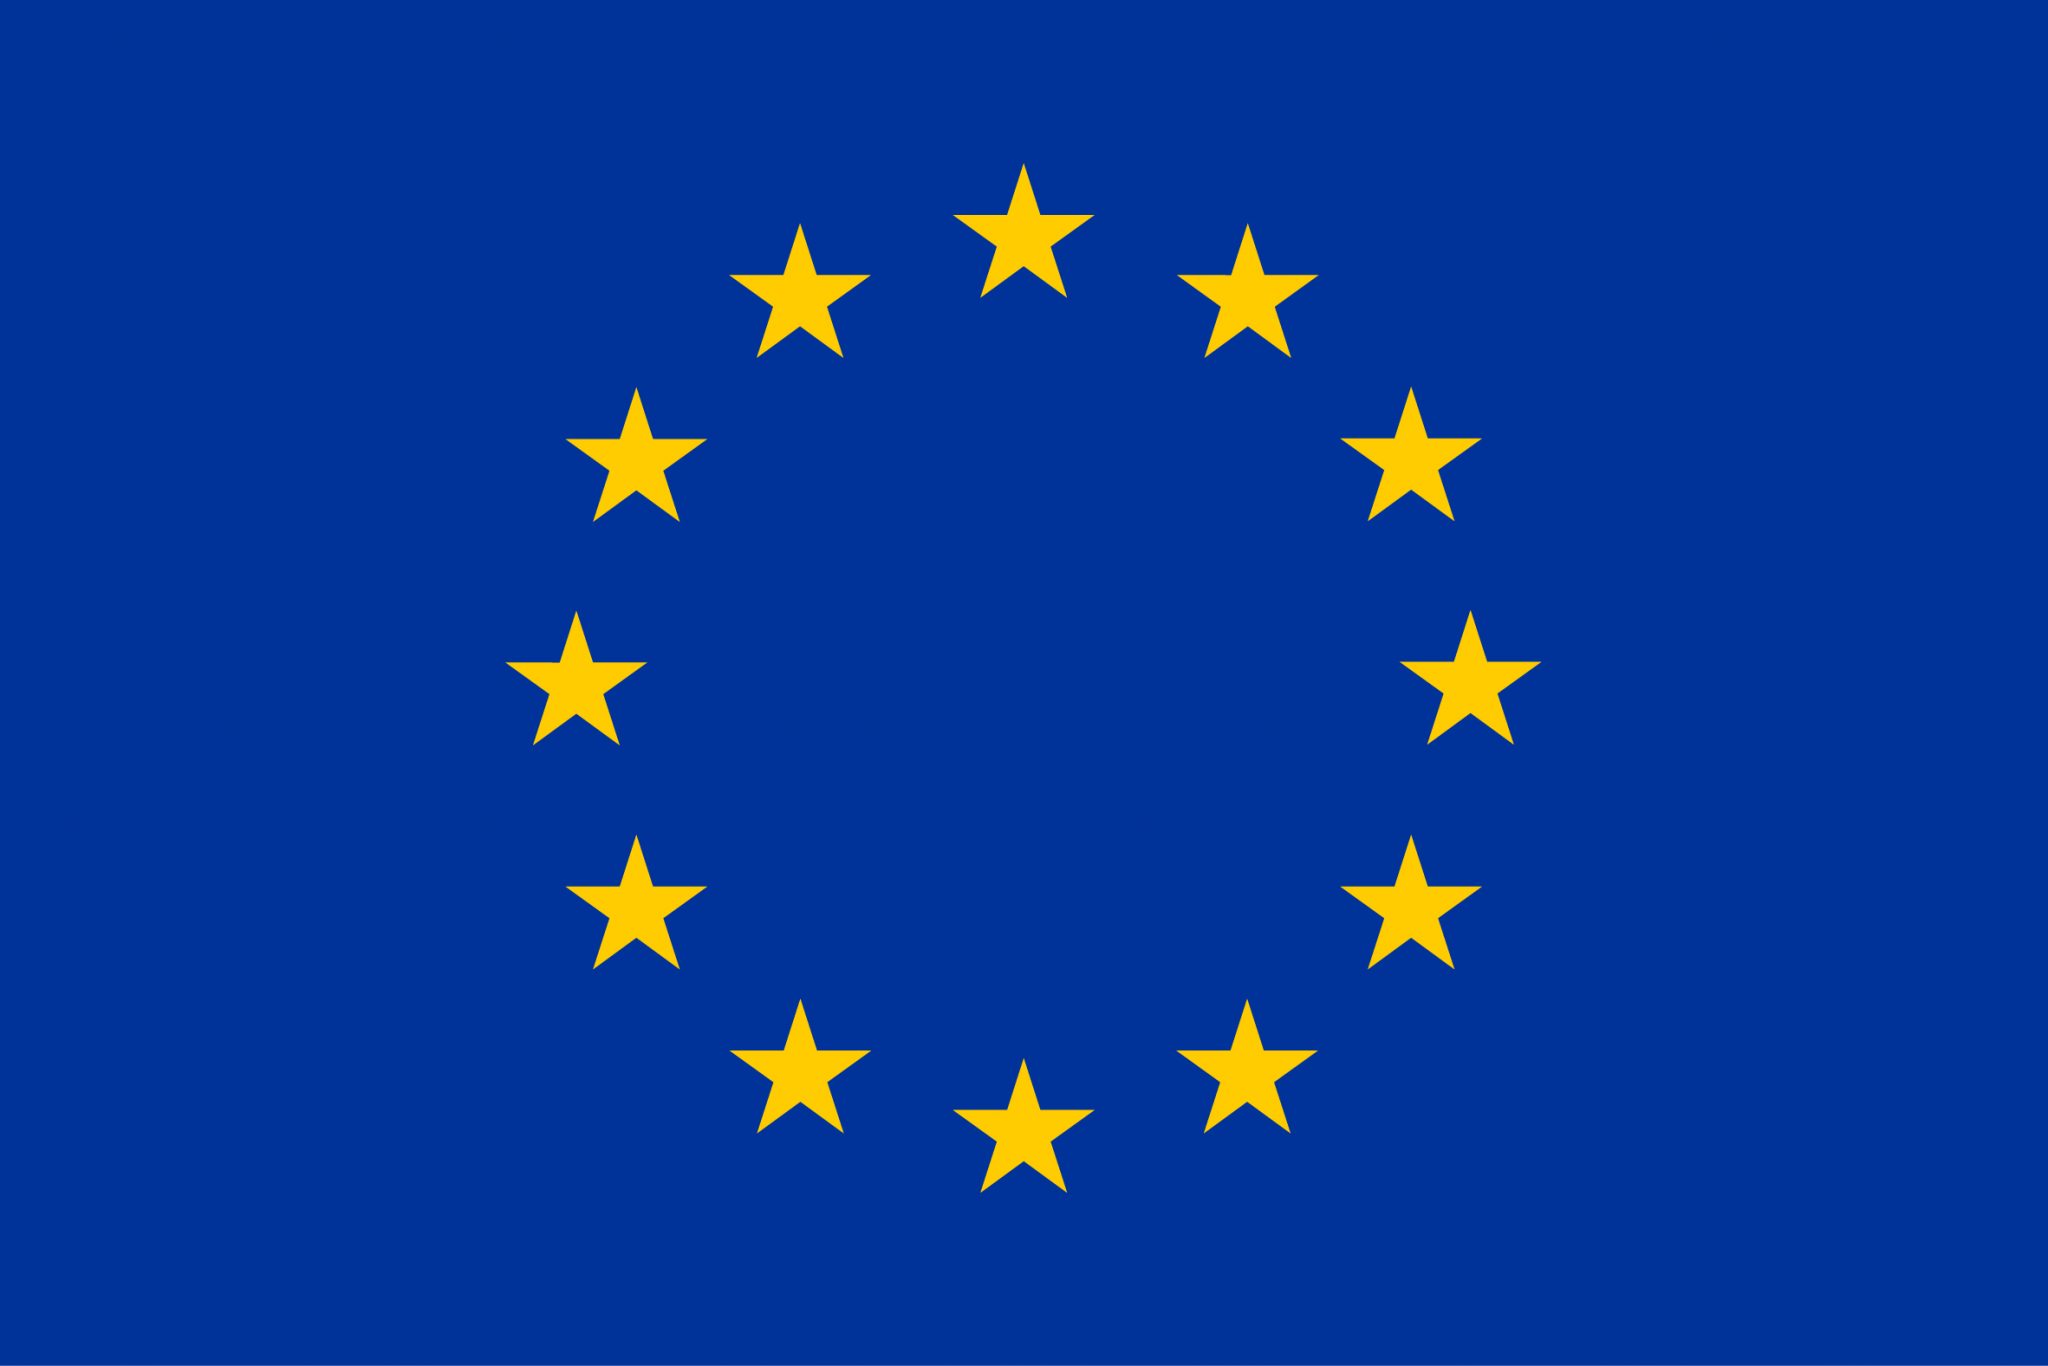 Európska komisia začala diskusiu o programe Digitálna Európa.  Vyjadriť svoj názor môžete do 25. októbra